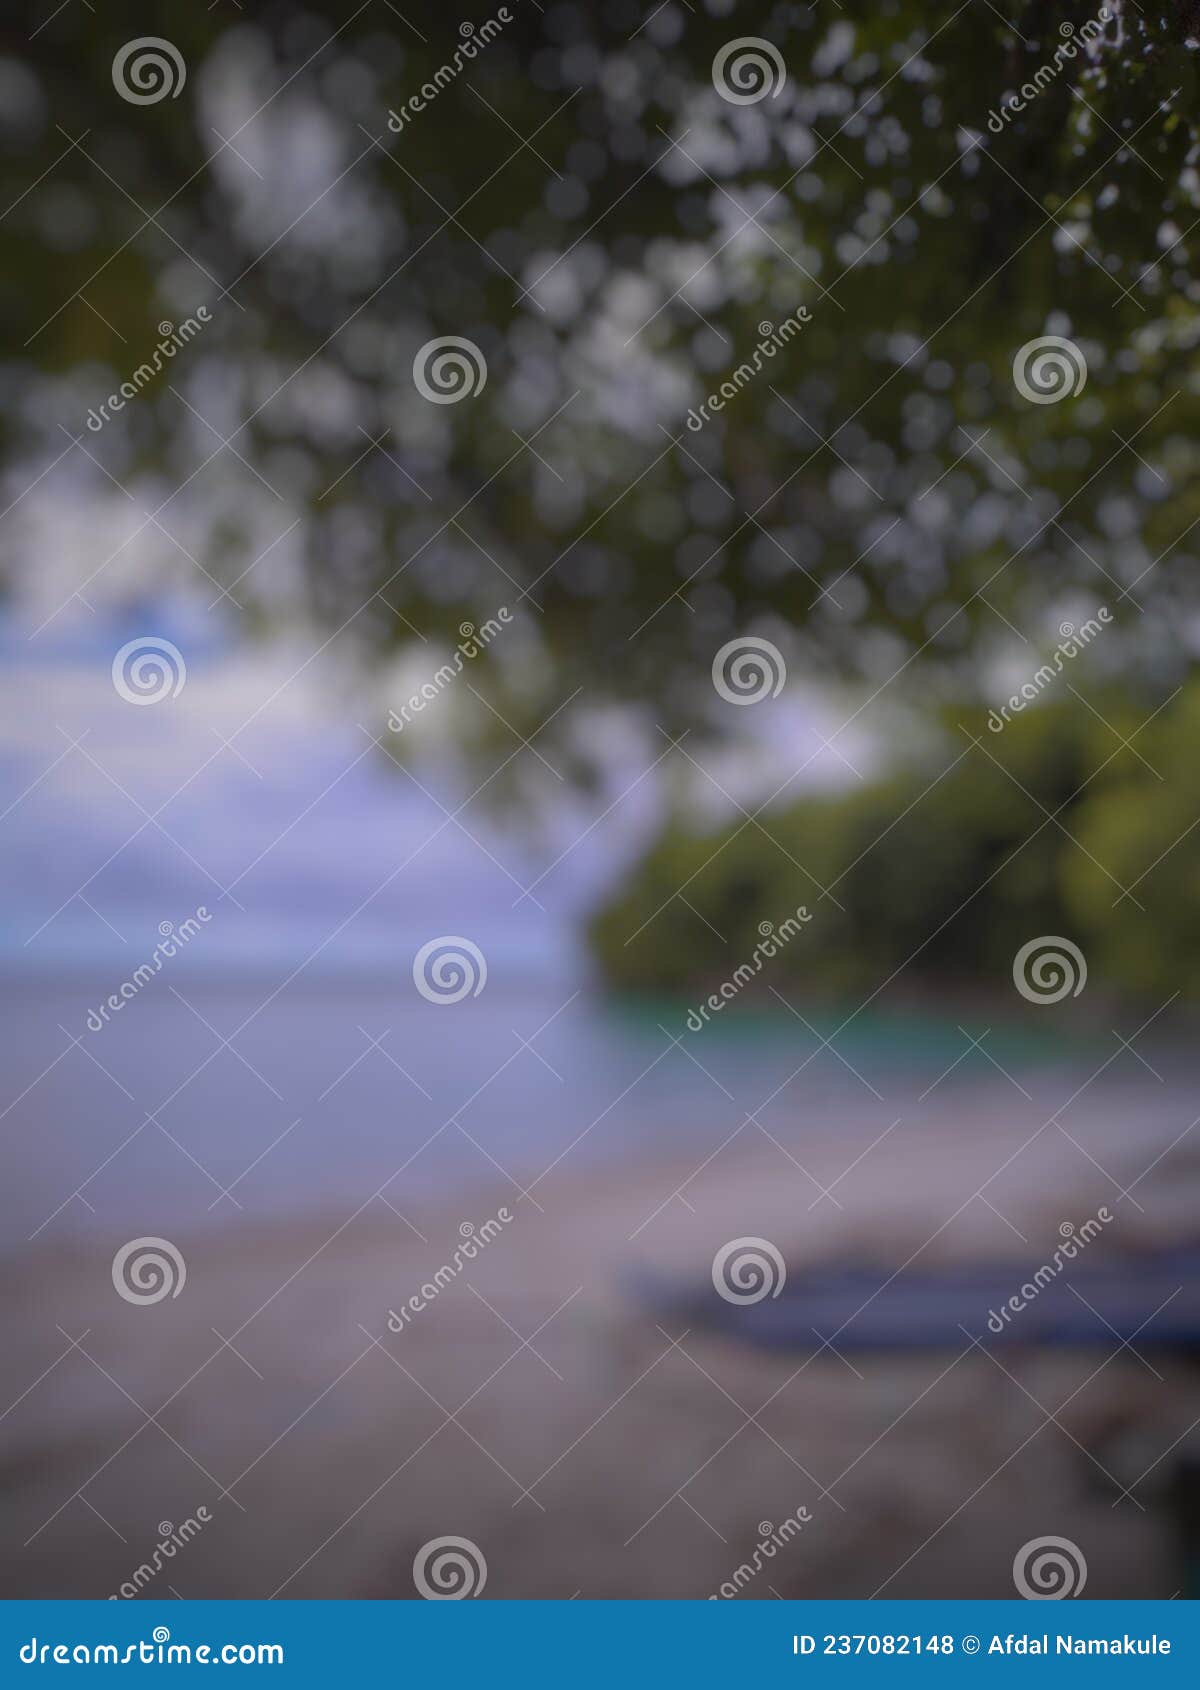 blur background photo